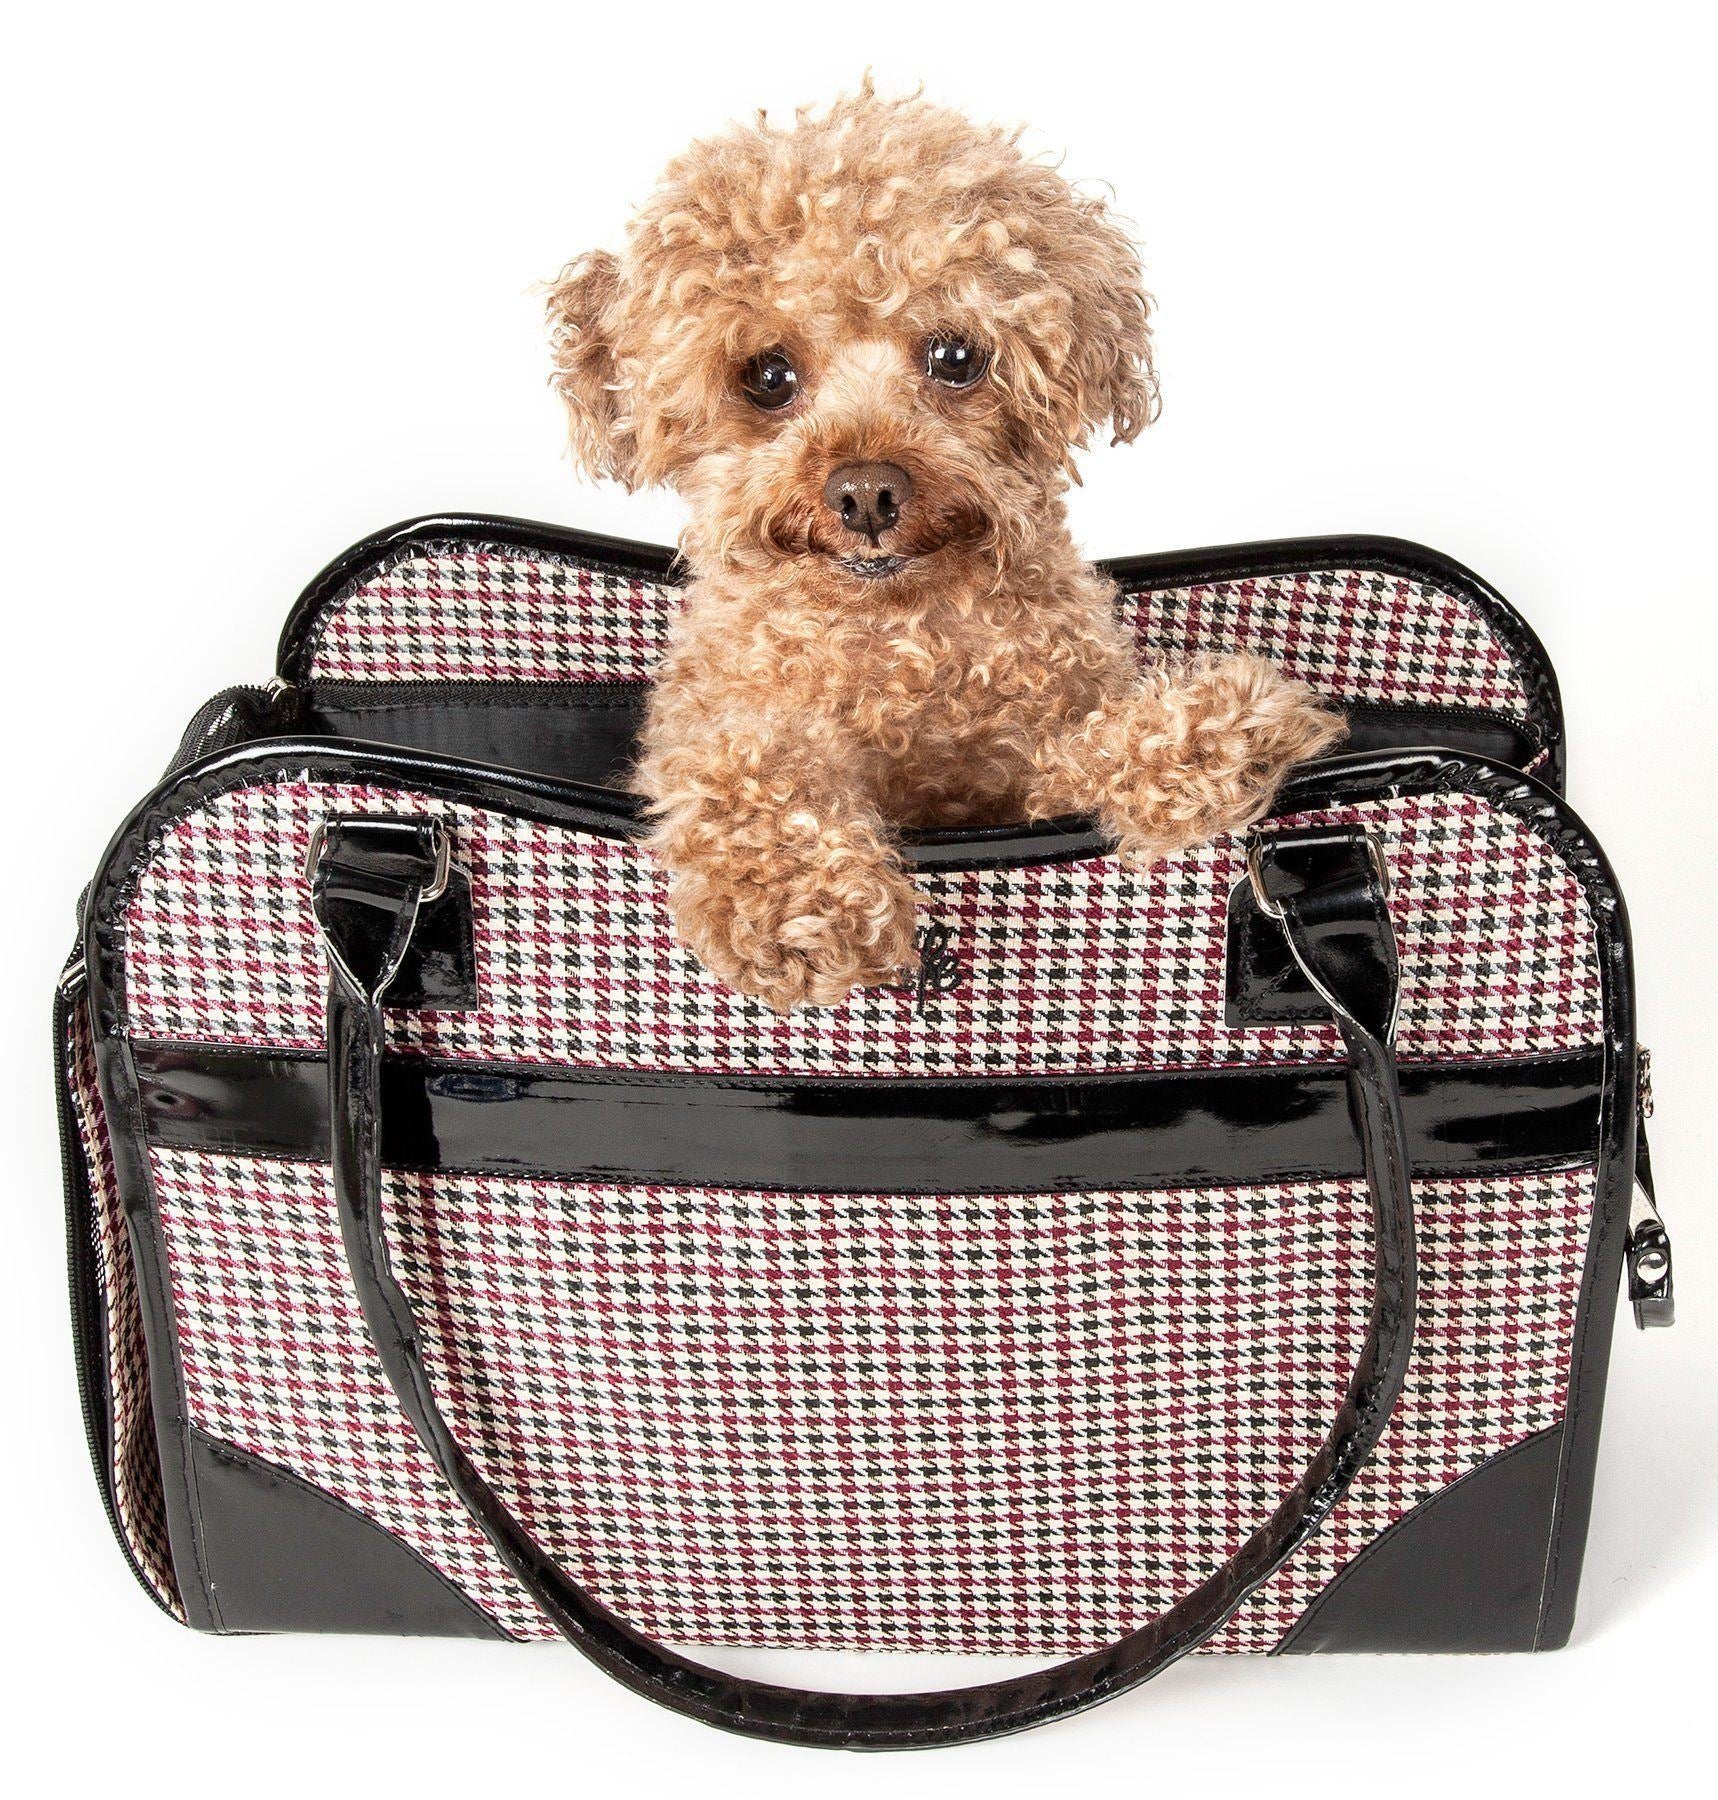 Pet Life ® Exquisite Airline Approved Designer Travel Pet Dog Handbag Carrier Multi-Color 